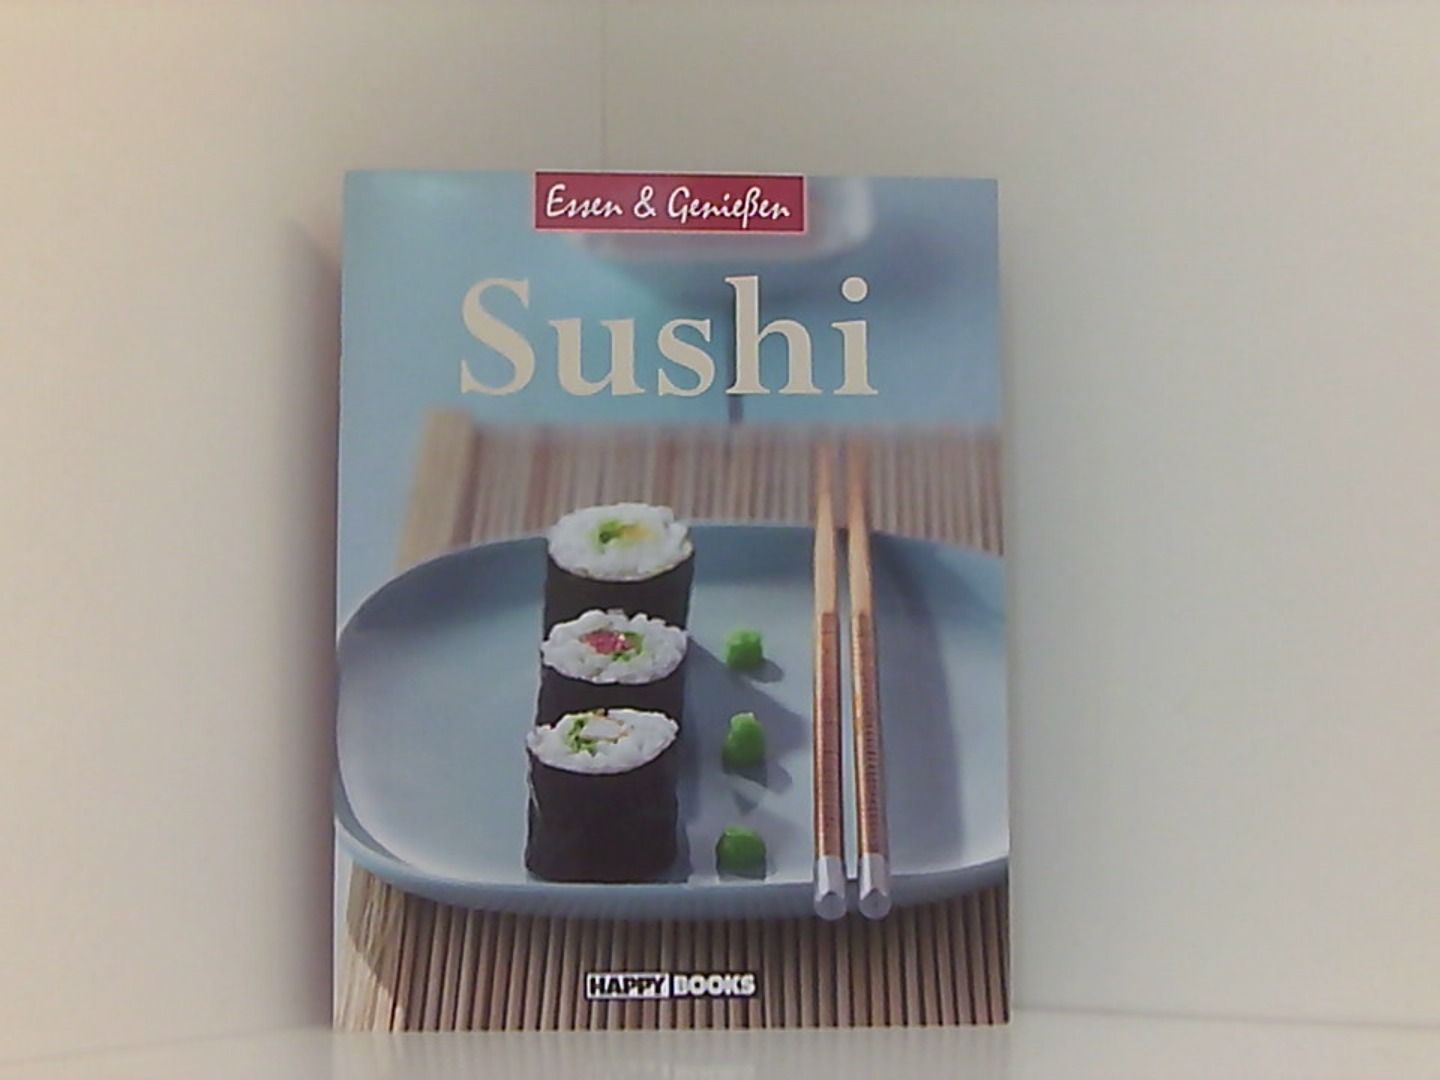 Sushi; Essen & Genießen - Happy, Books